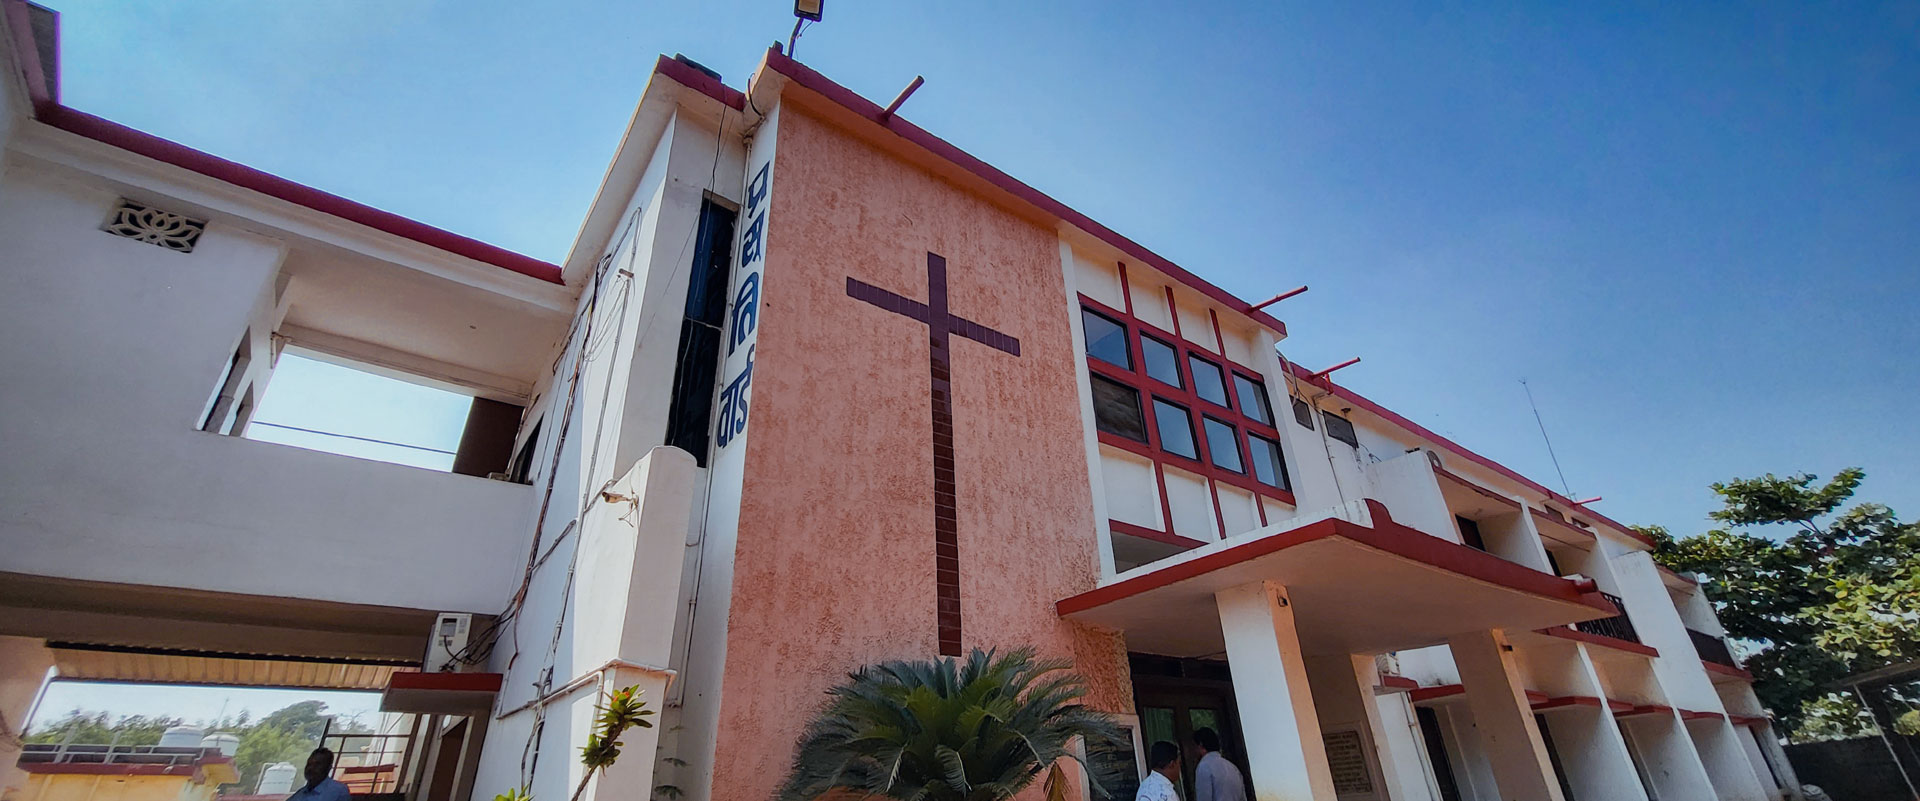 Evangelical Mission Hospital